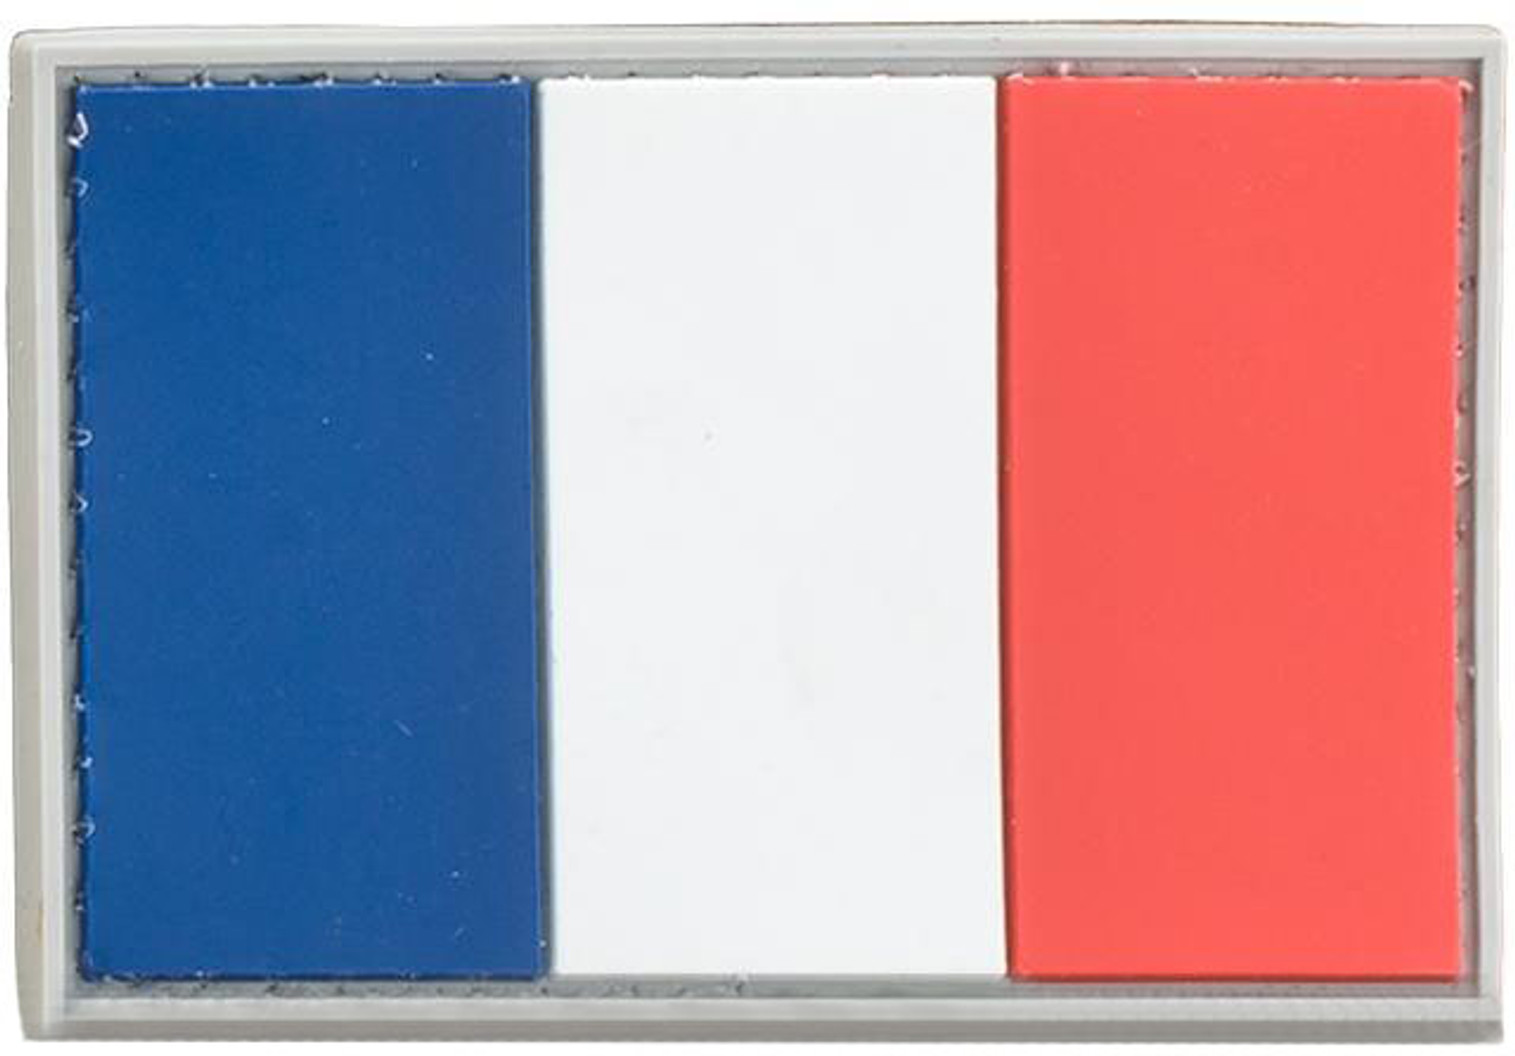 France PVC Flag Patch